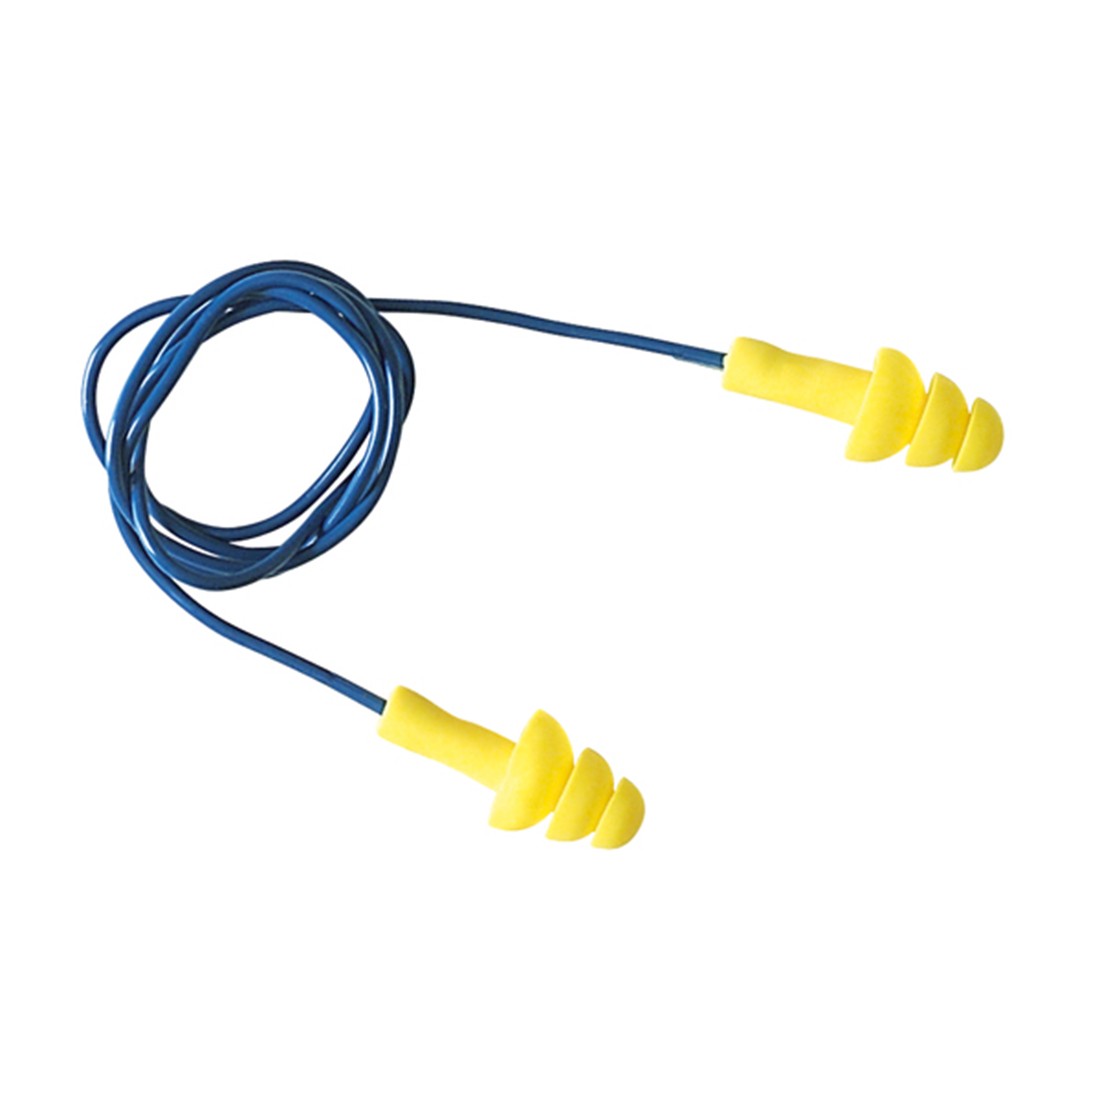 Coverguard - Bouchons anti-bruit avec corde ULTRAFIT (Pack de 50) - Carbonn